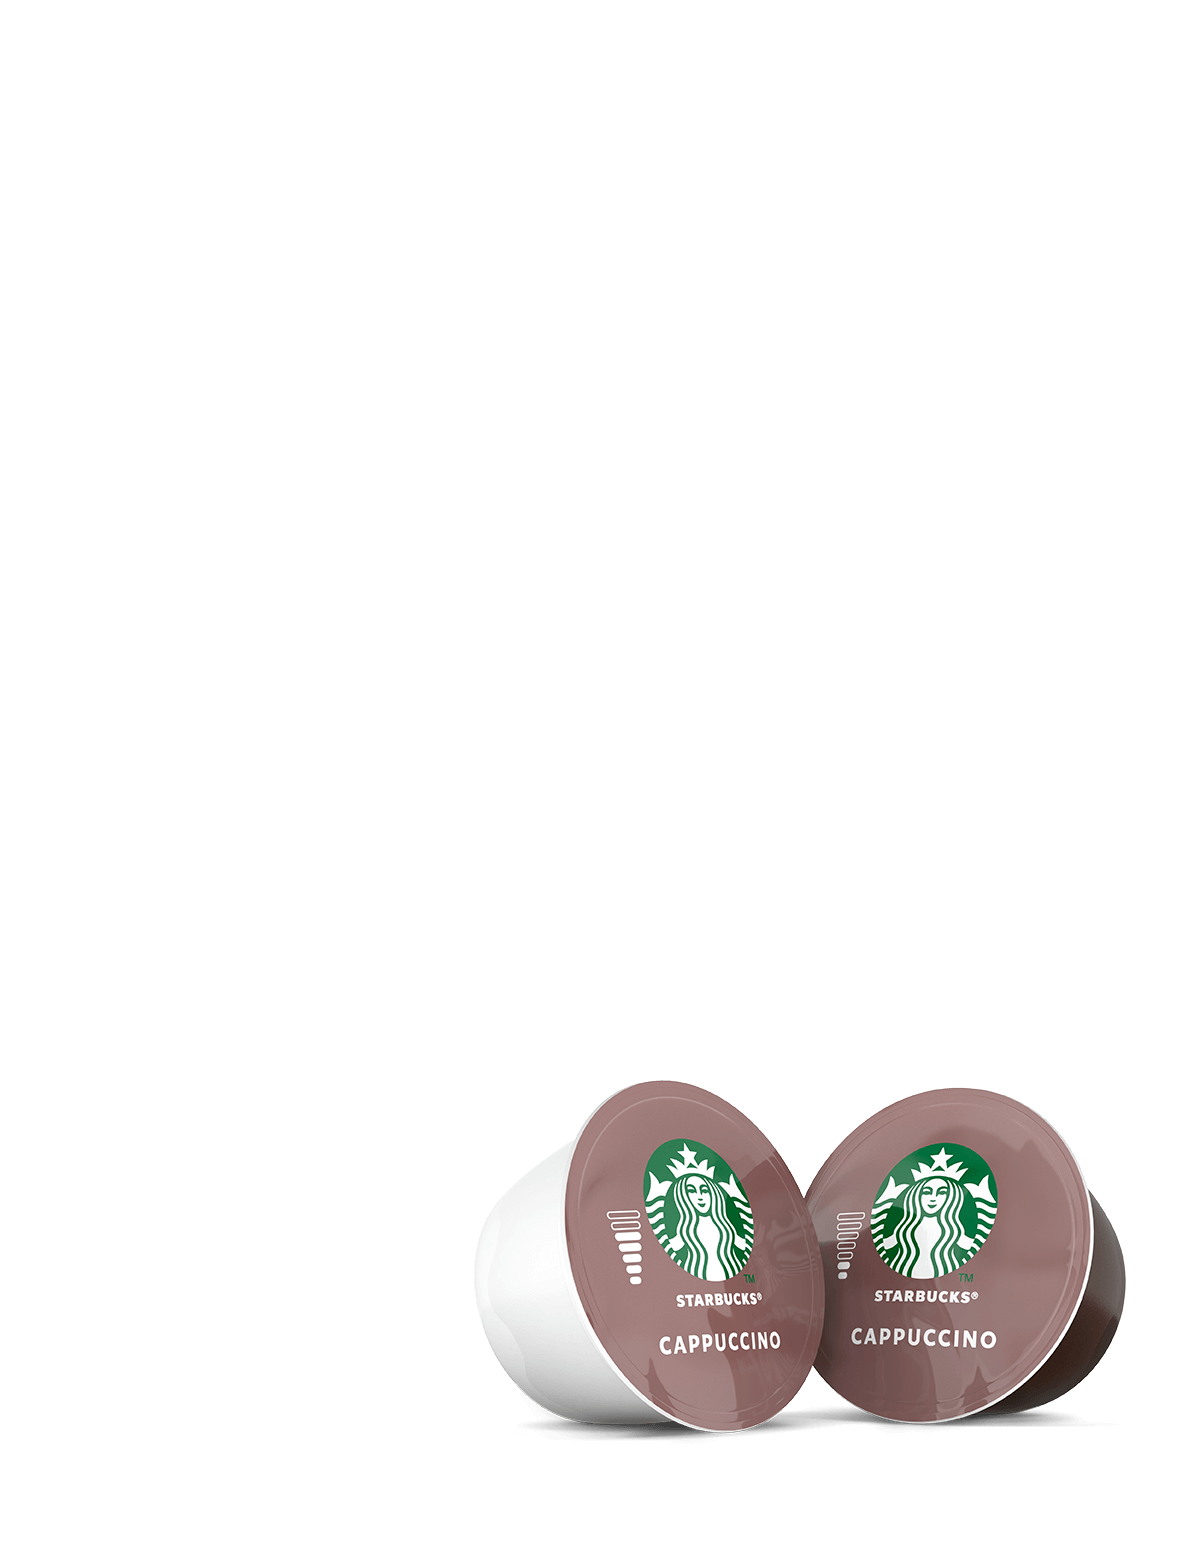 STARBUCKS Cappuccino